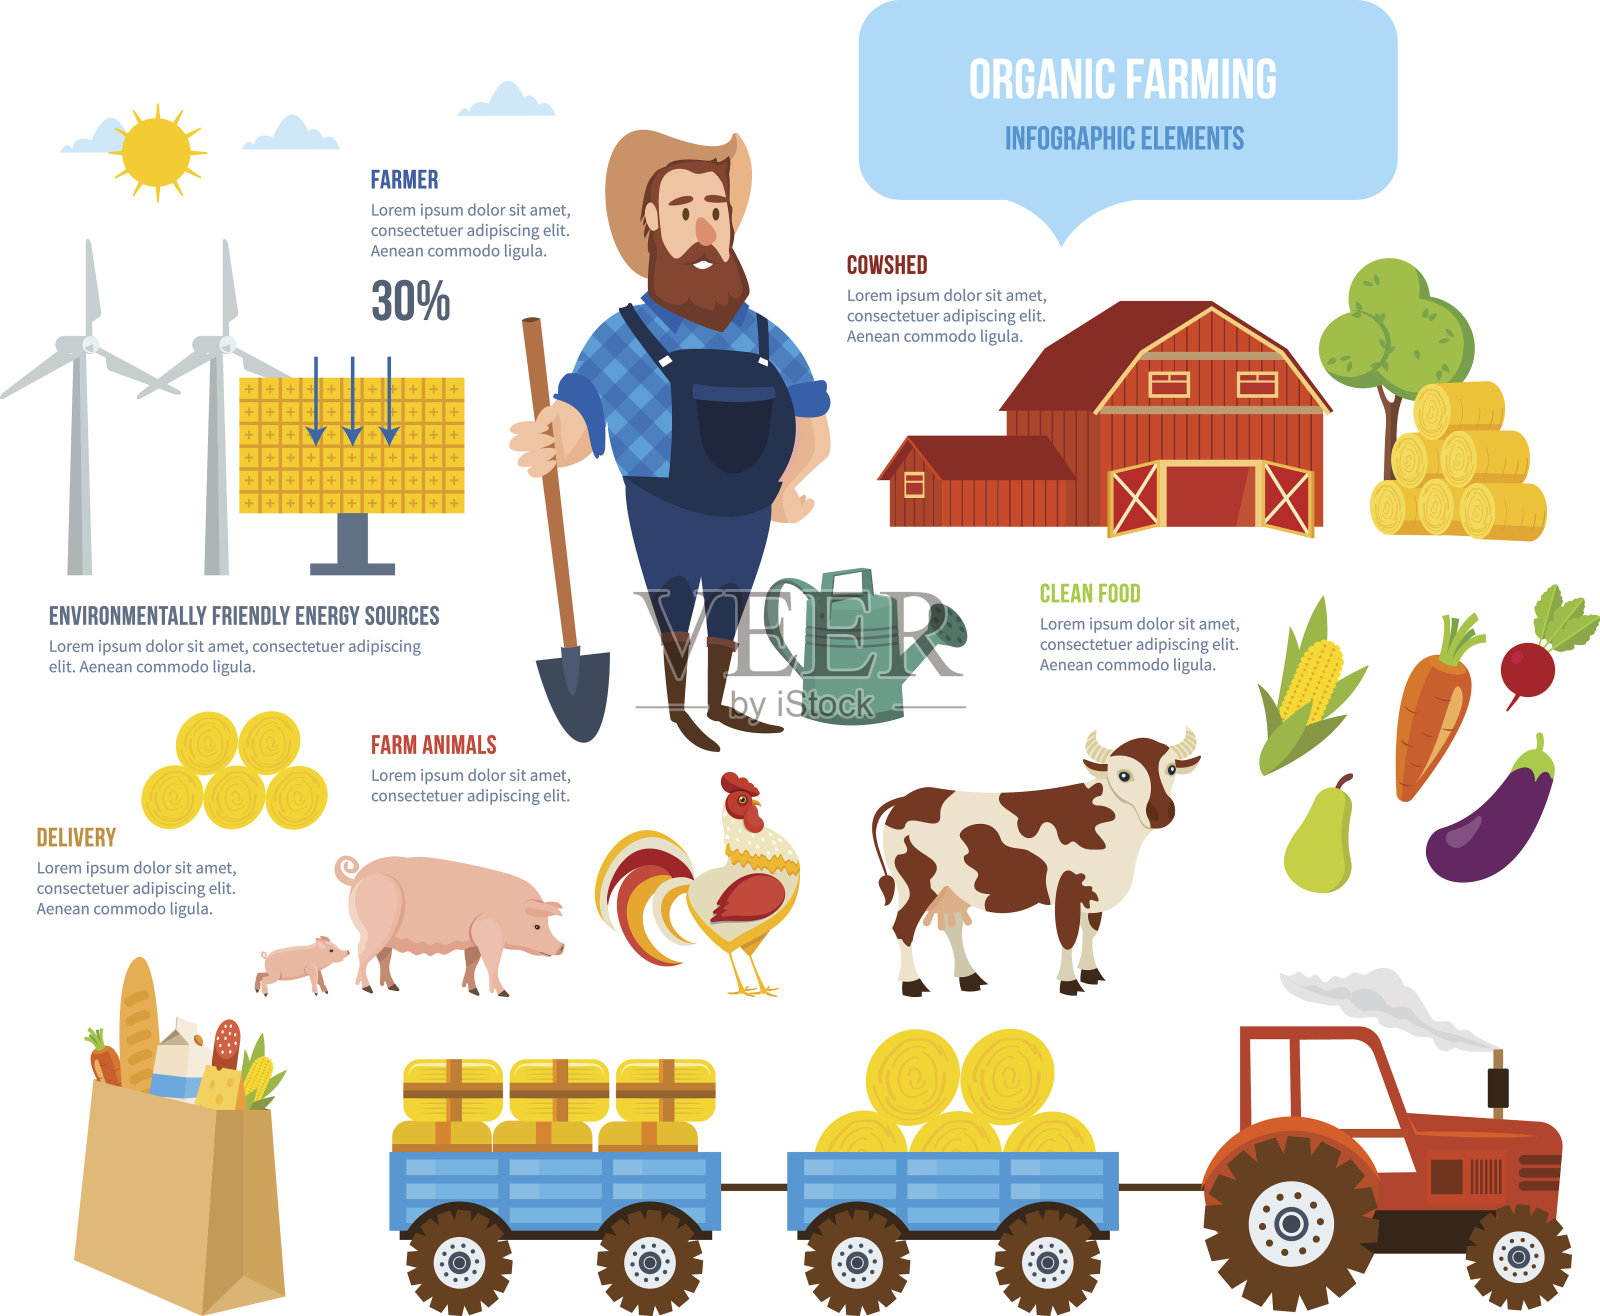 农民、动物、天然清洁食品、环保能源、配送插画图片素材